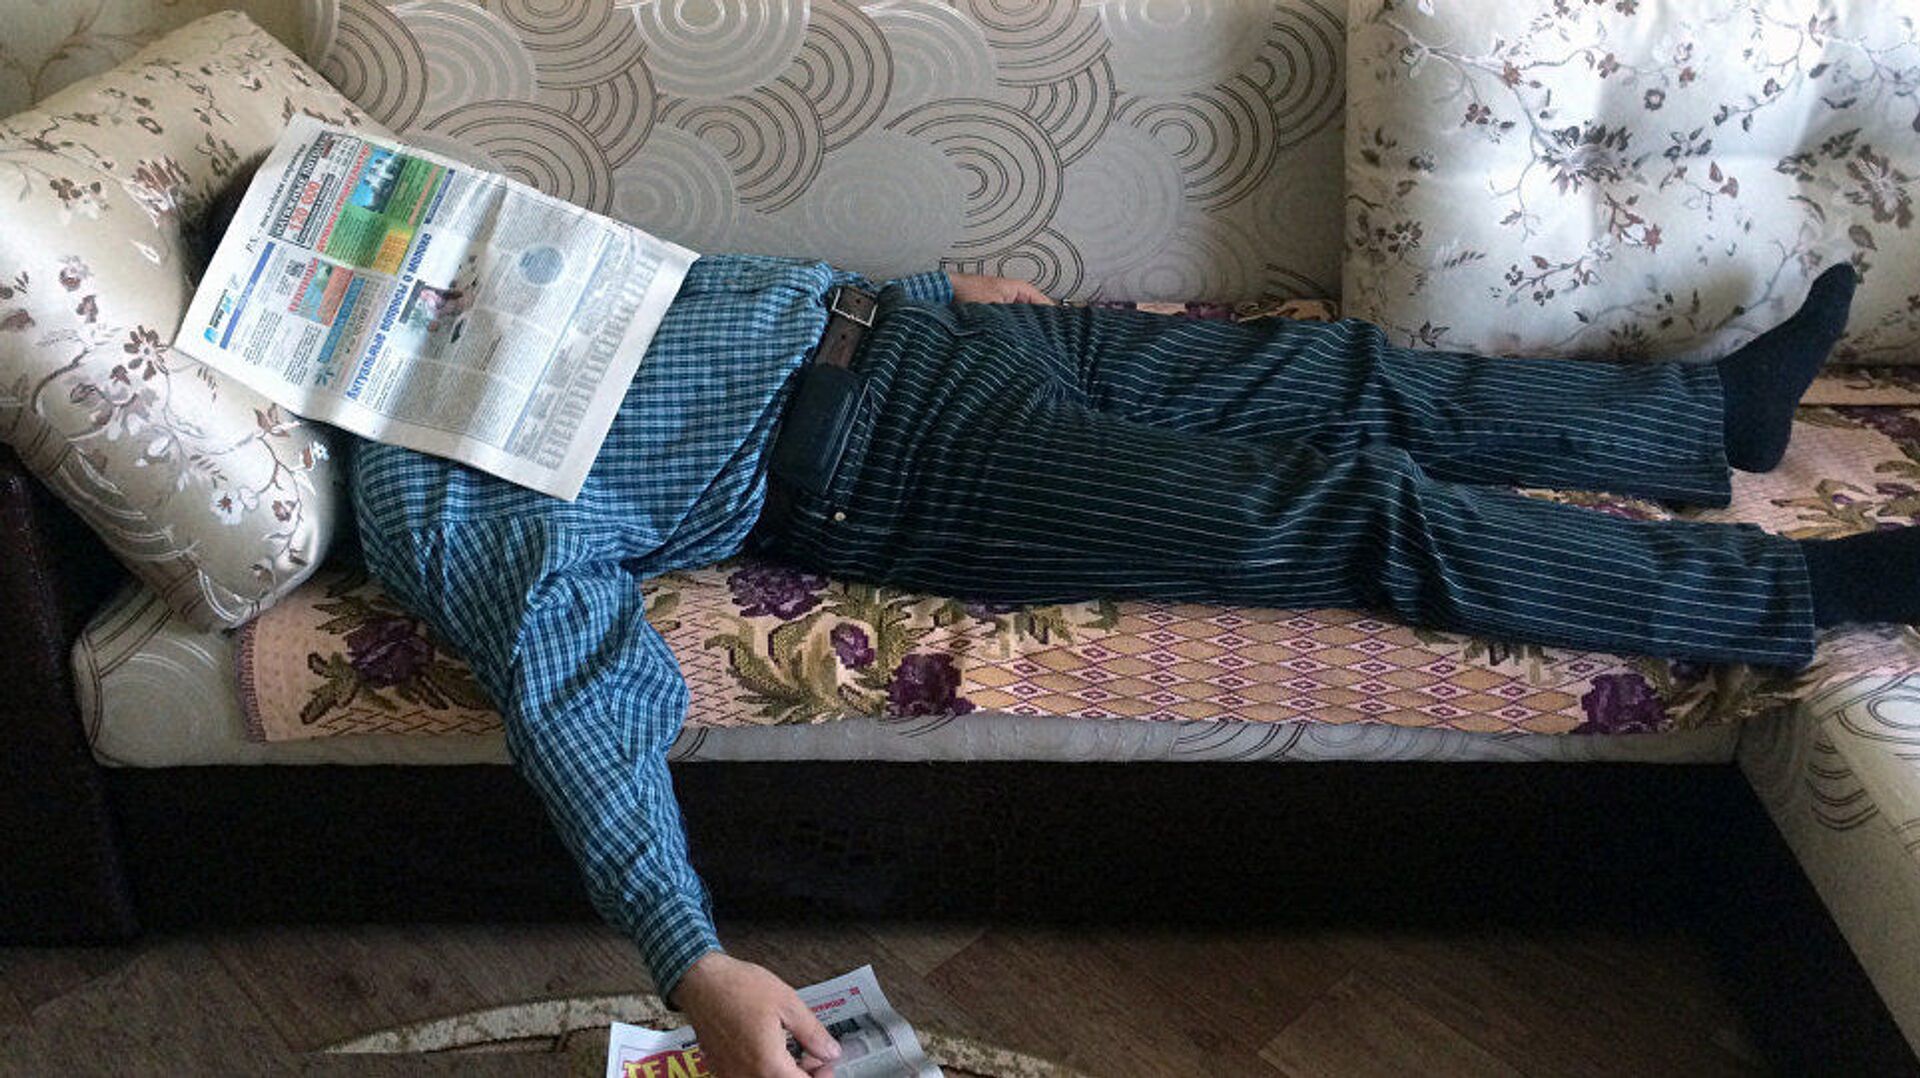 Мужчина лежит на диване, фото из архива - Sputnik Азербайджан, 1920, 15.10.2021